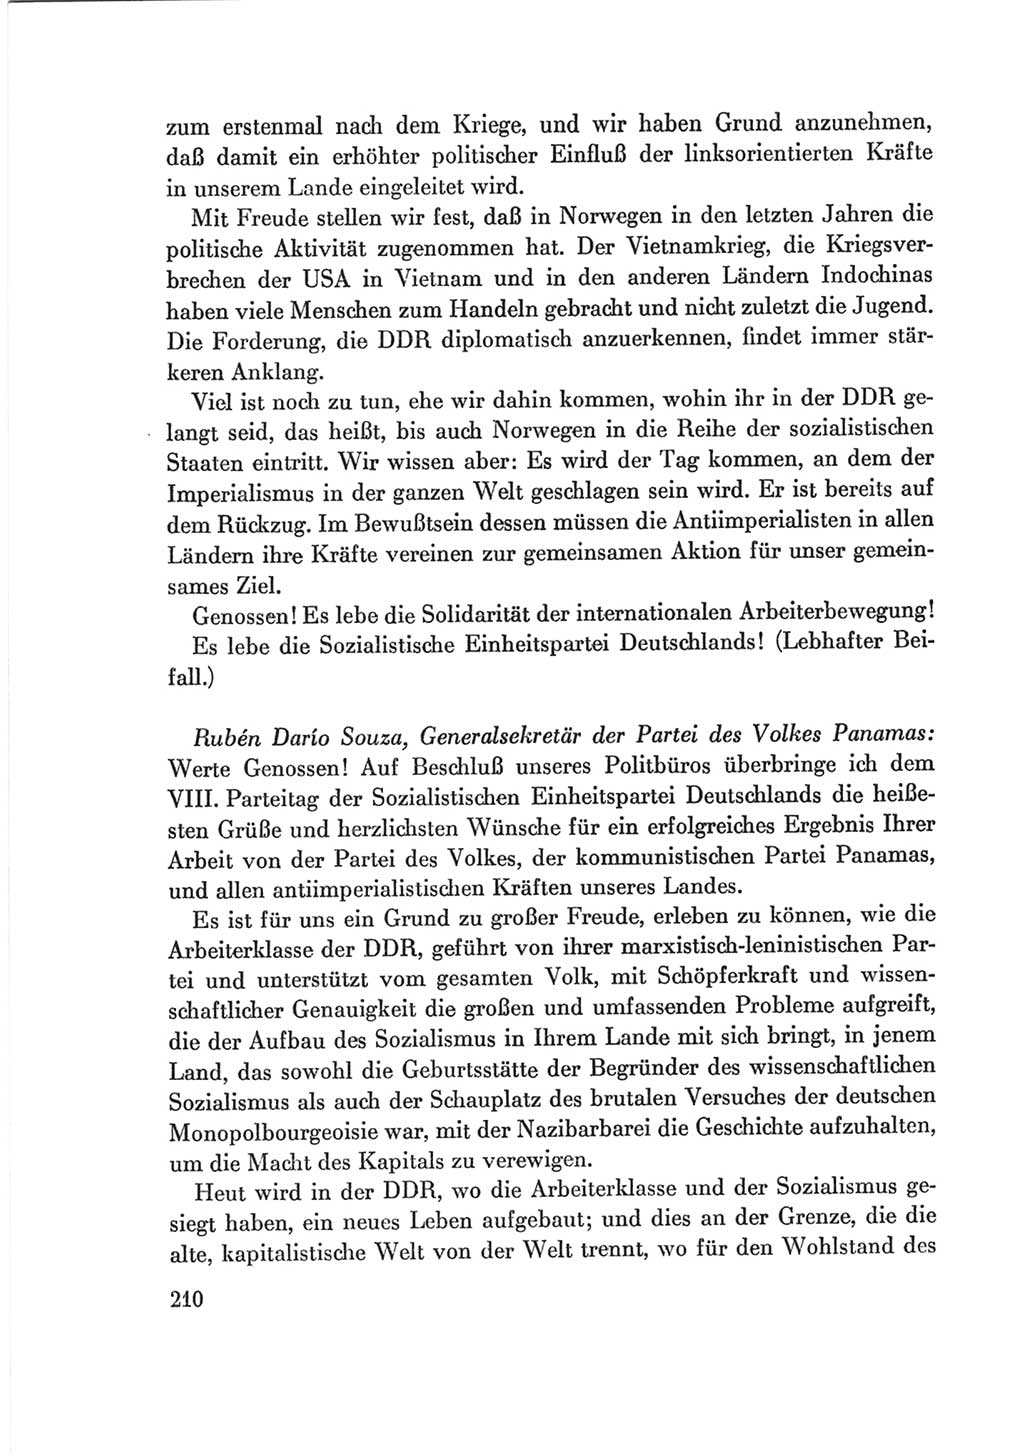 Protokoll der Verhandlungen des Ⅷ. Parteitages der Sozialistischen Einheitspartei Deutschlands (SED) [Deutsche Demokratische Republik (DDR)] 1971, Band 2, Seite 210 (Prot. Verh. Ⅷ. PT SED DDR 1971, Bd. 2, S. 210)